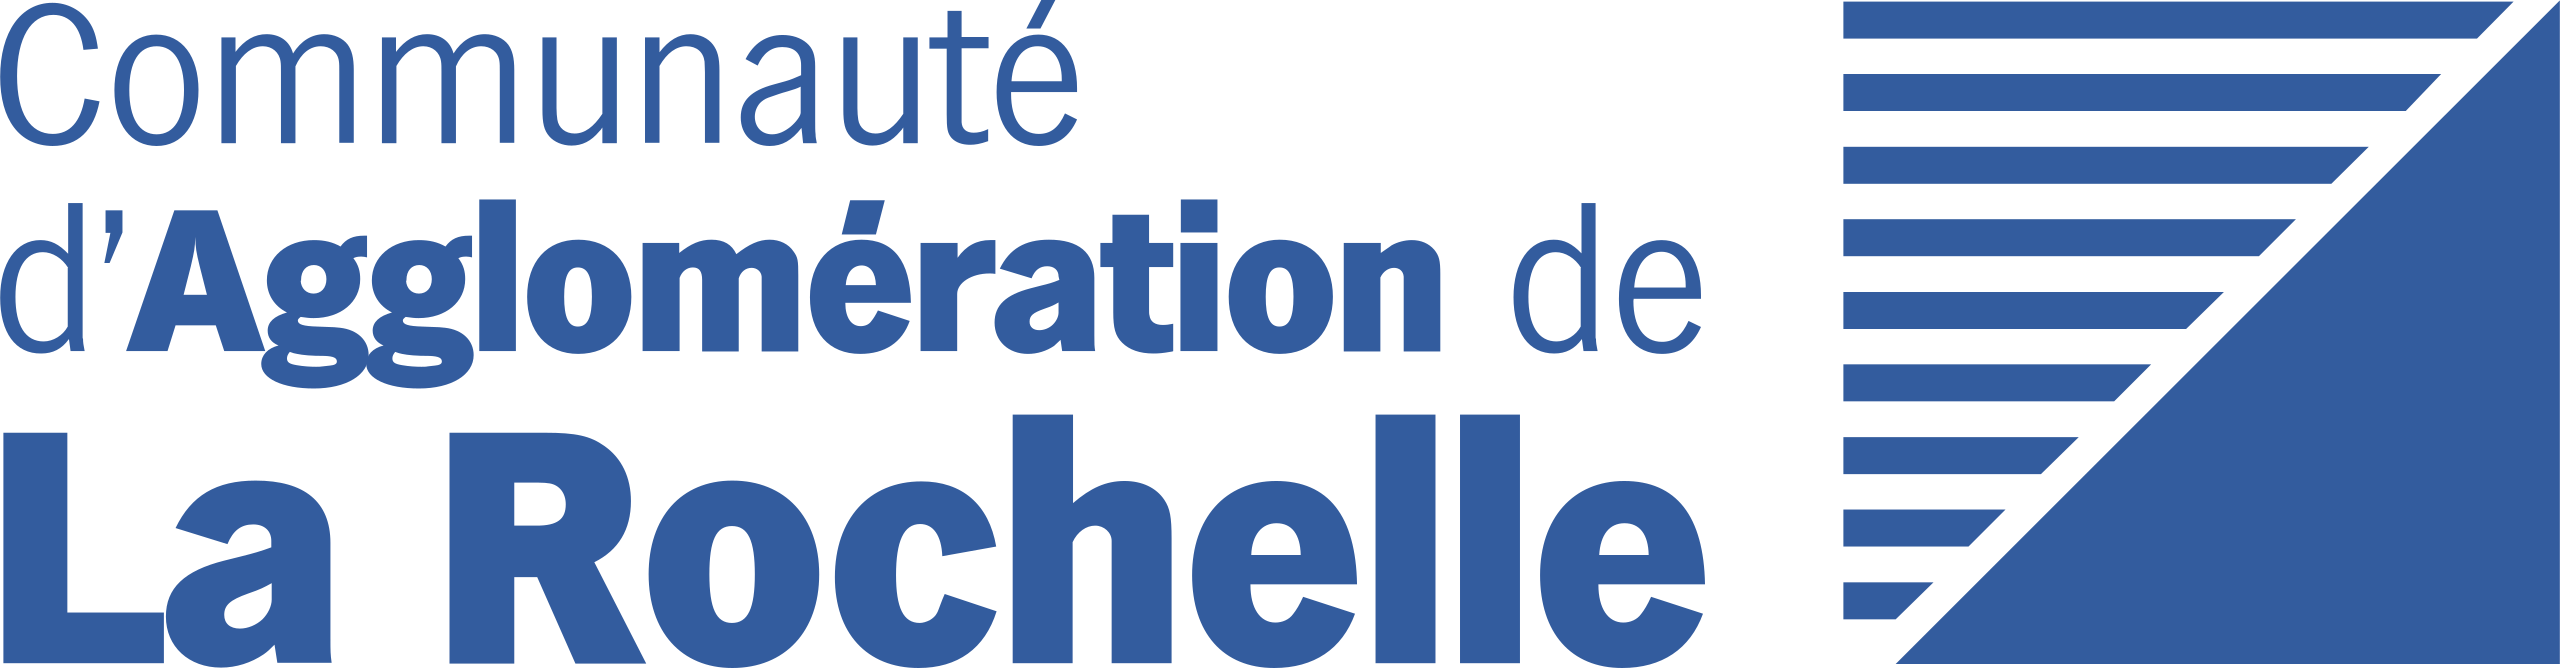 https://rapport-activite-2021.ville-et-banlieue.org/wp-content/uploads/2022/03/2560px-Communaute_d_agglomeration_de_la_rochelle.png